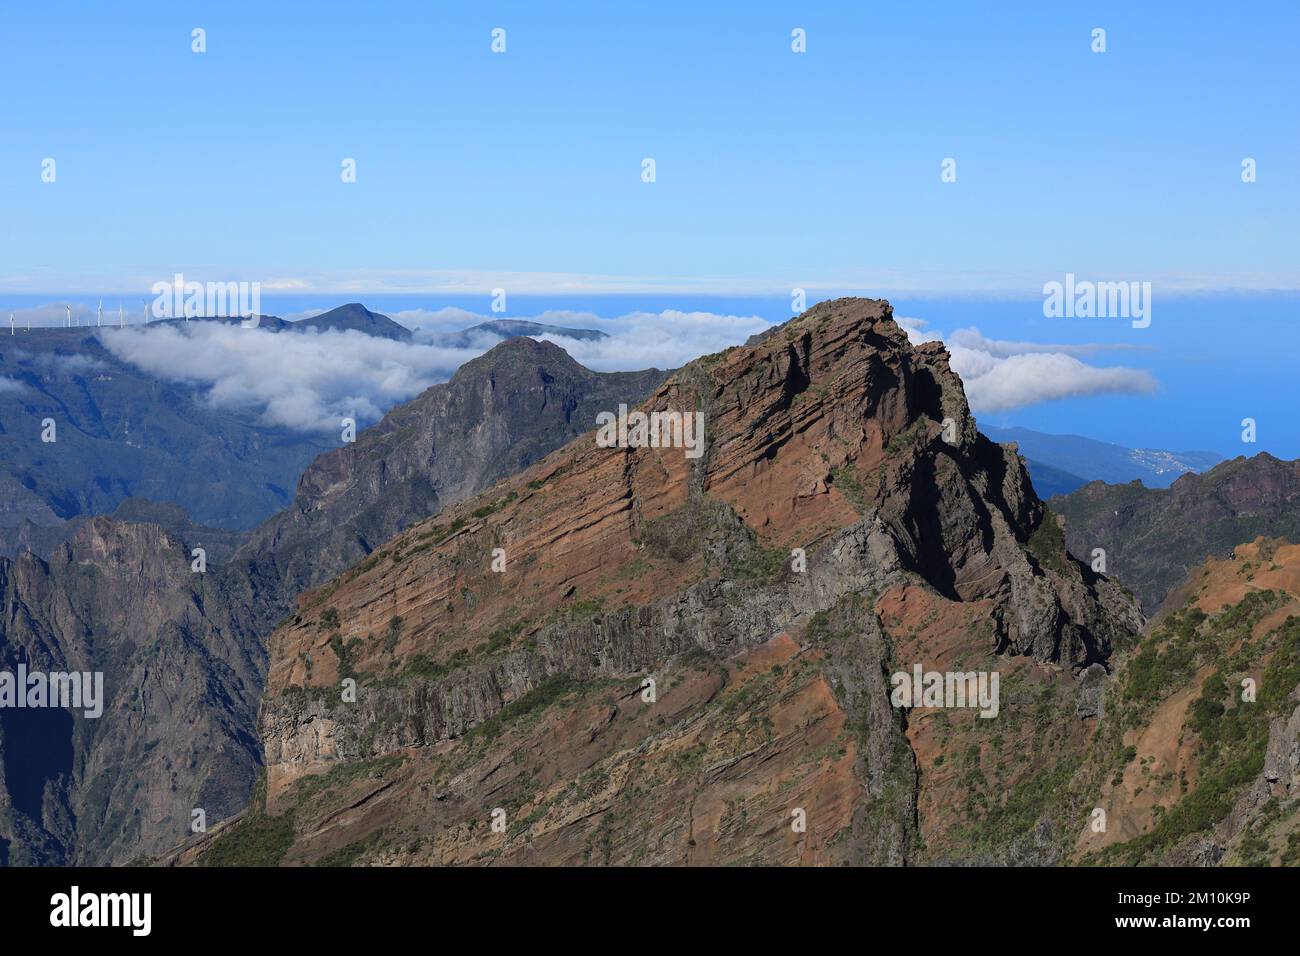 Pico do Arieiro, Madeira - Inversión de nubes en lo alto entre los picos montañosos con el Océano Atlántico en la distancia Foto de stock